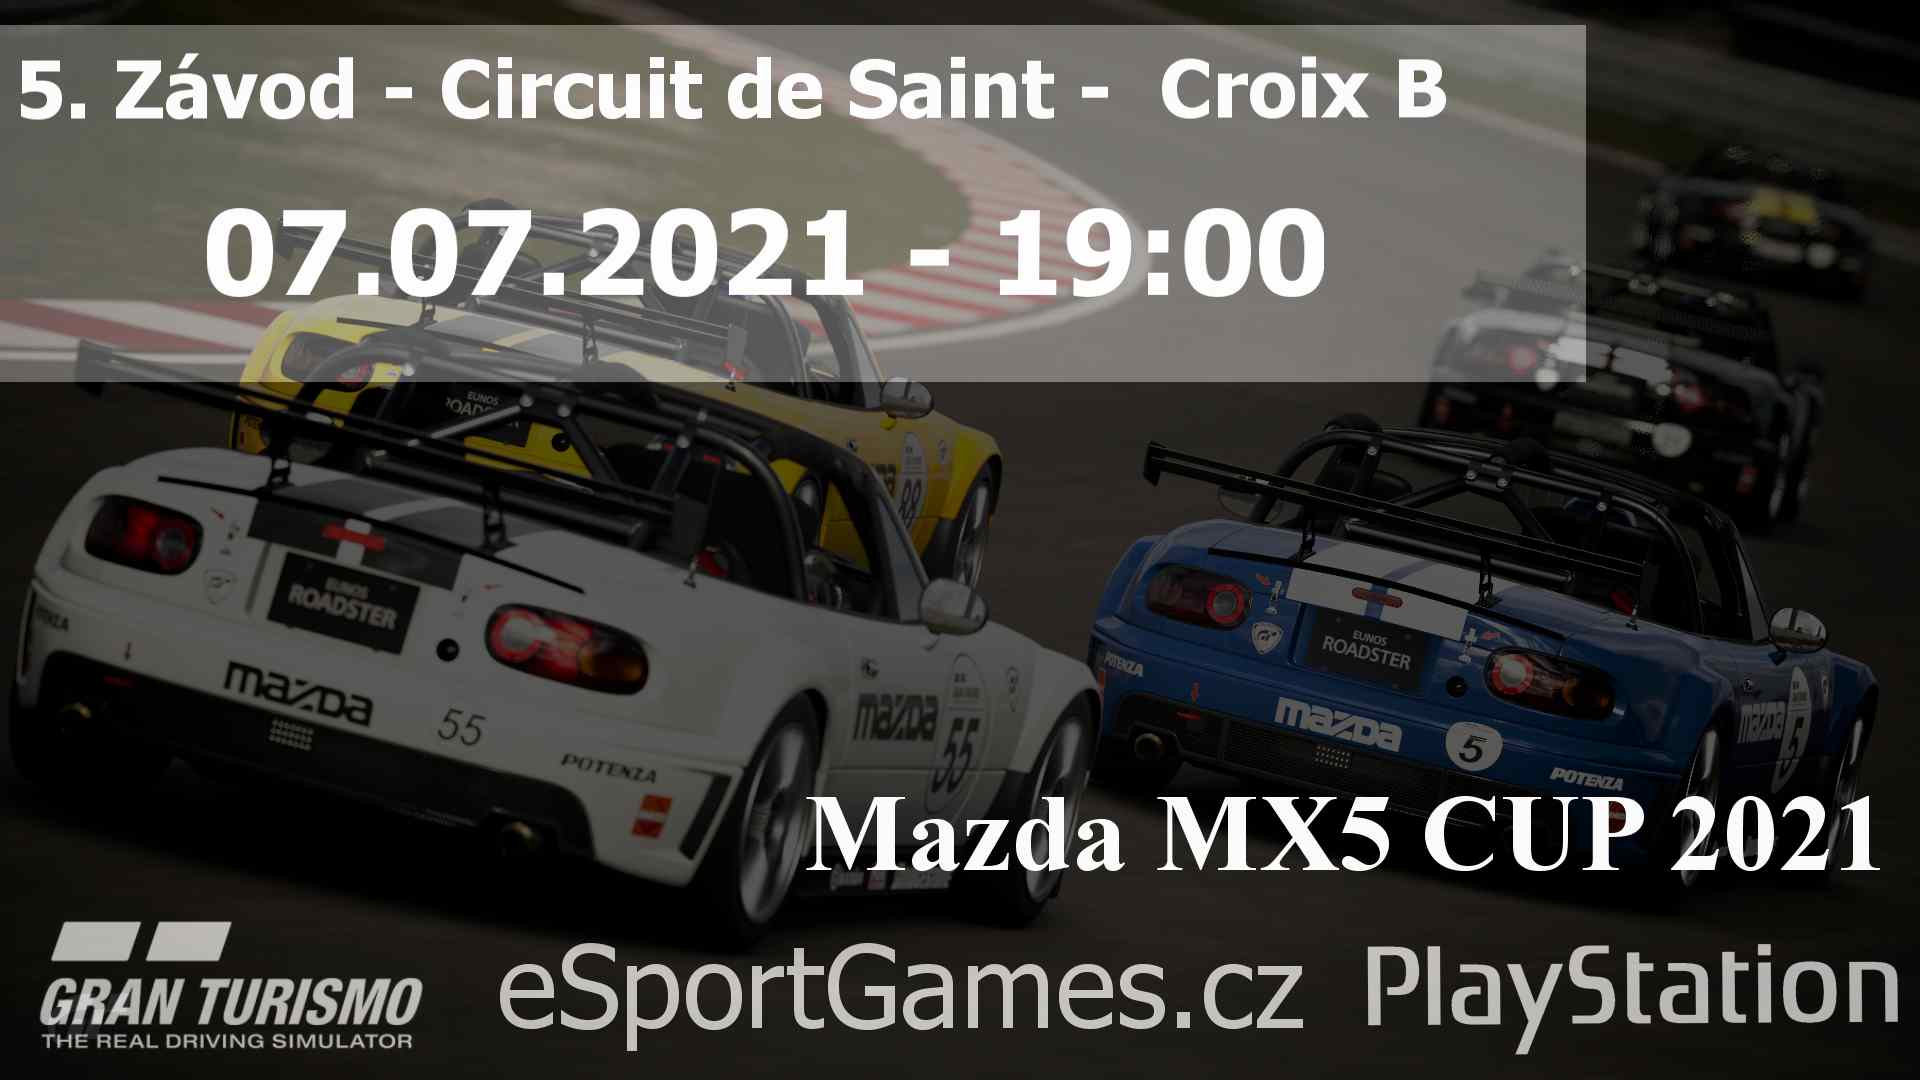 5. Závod - MX5 CUP 2021 - Circuit de Saint -  Croix B